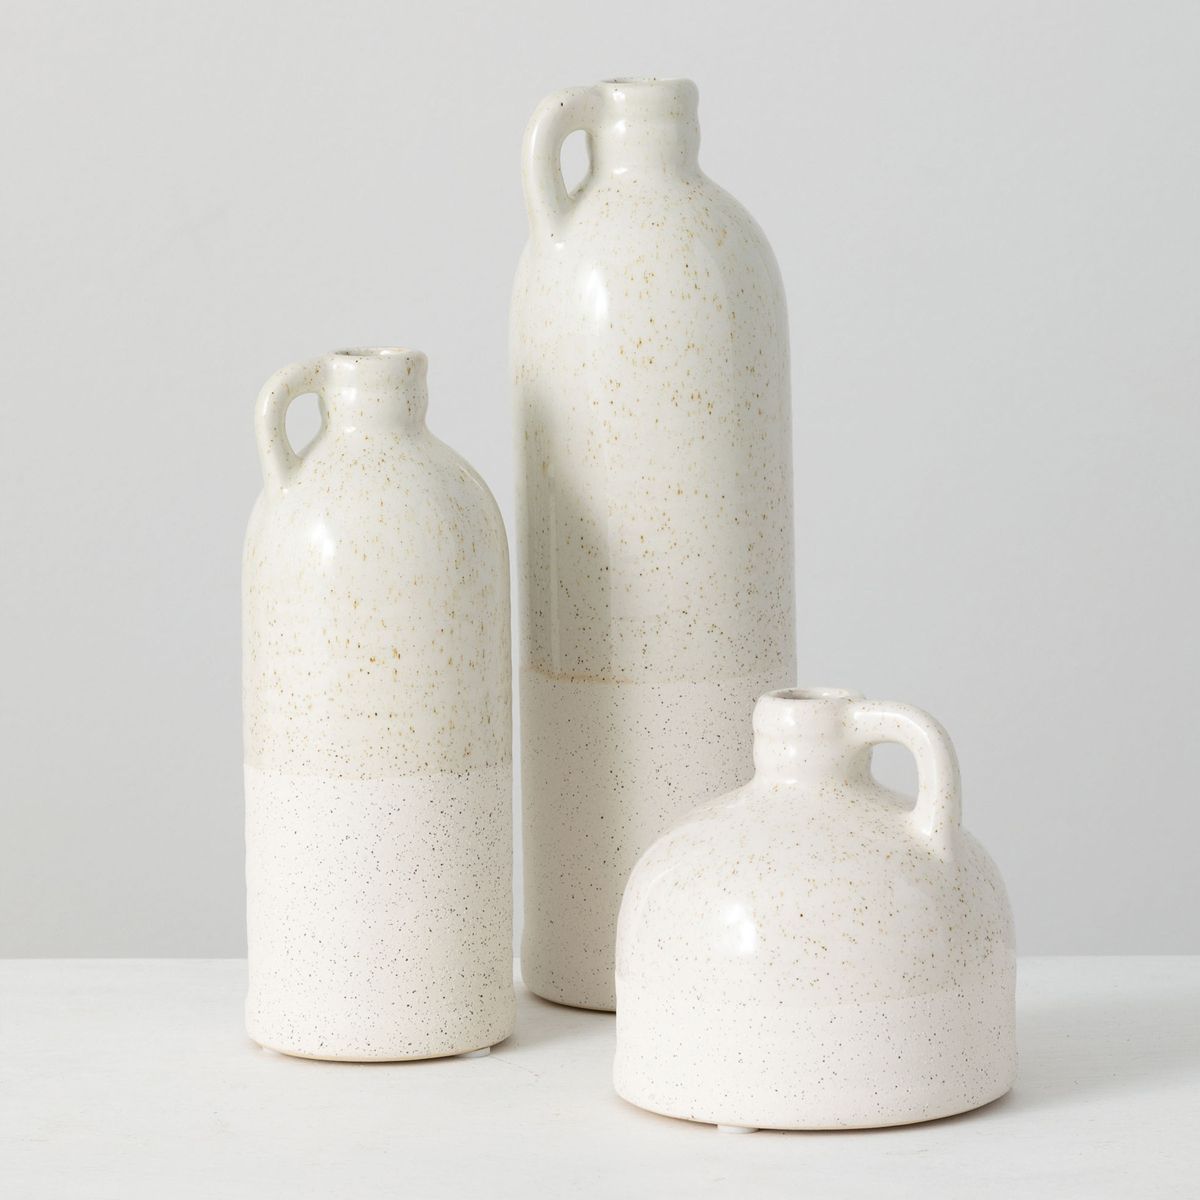 Sullivans Set of 3 Bottle Vases 10"H, 7.5"H & 4"H | Target